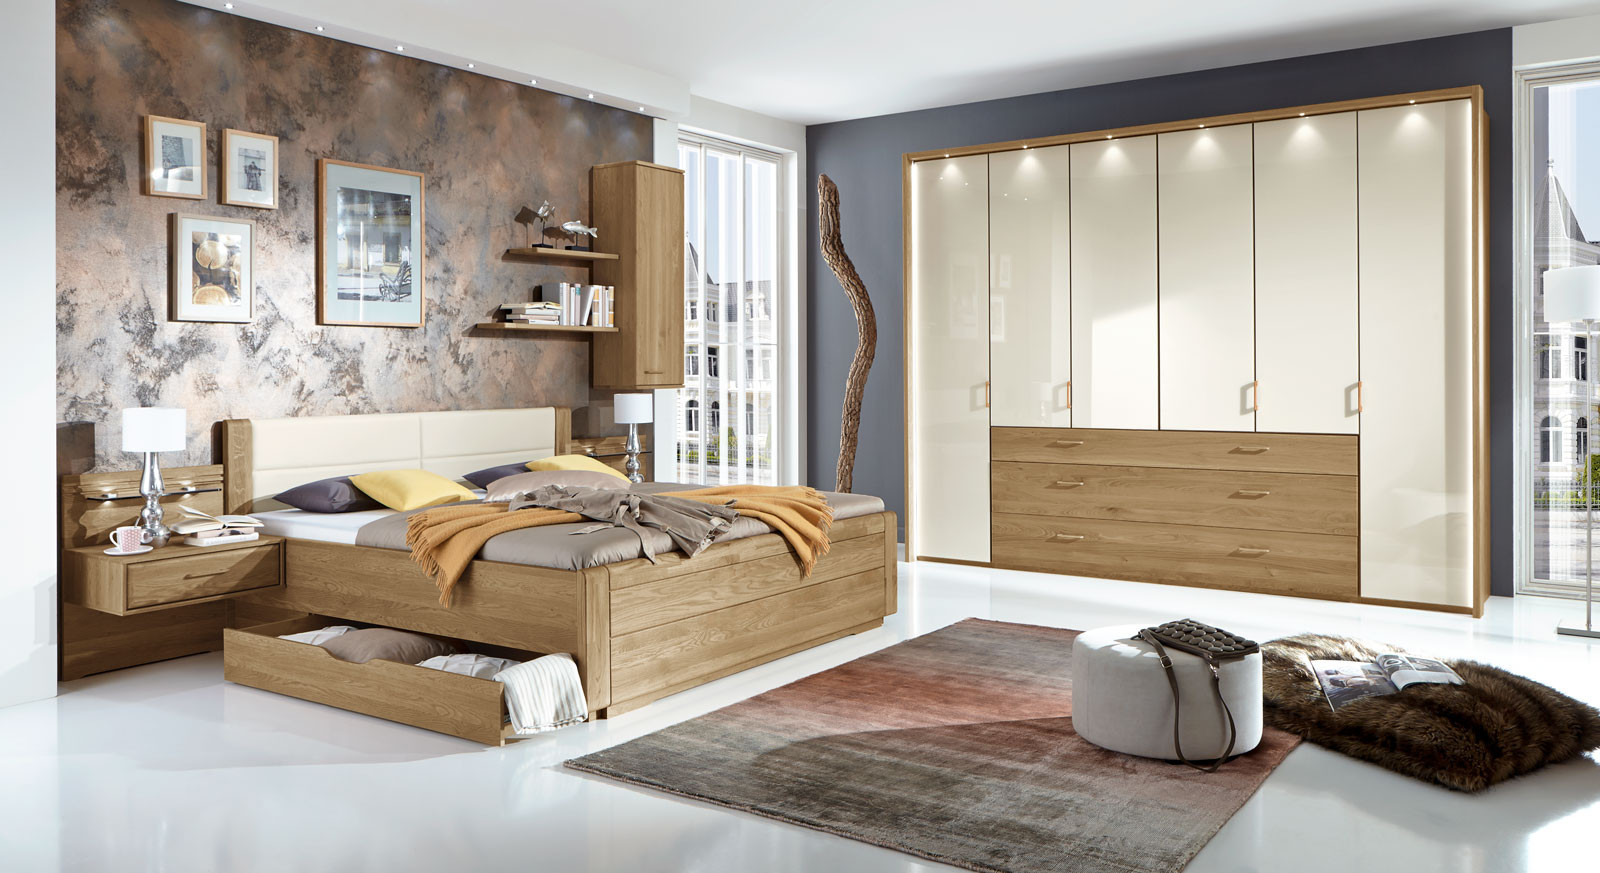 Komplett Schlafzimmer
 Teilmassives Schlafzimmer komplett mit Schubkastenbett